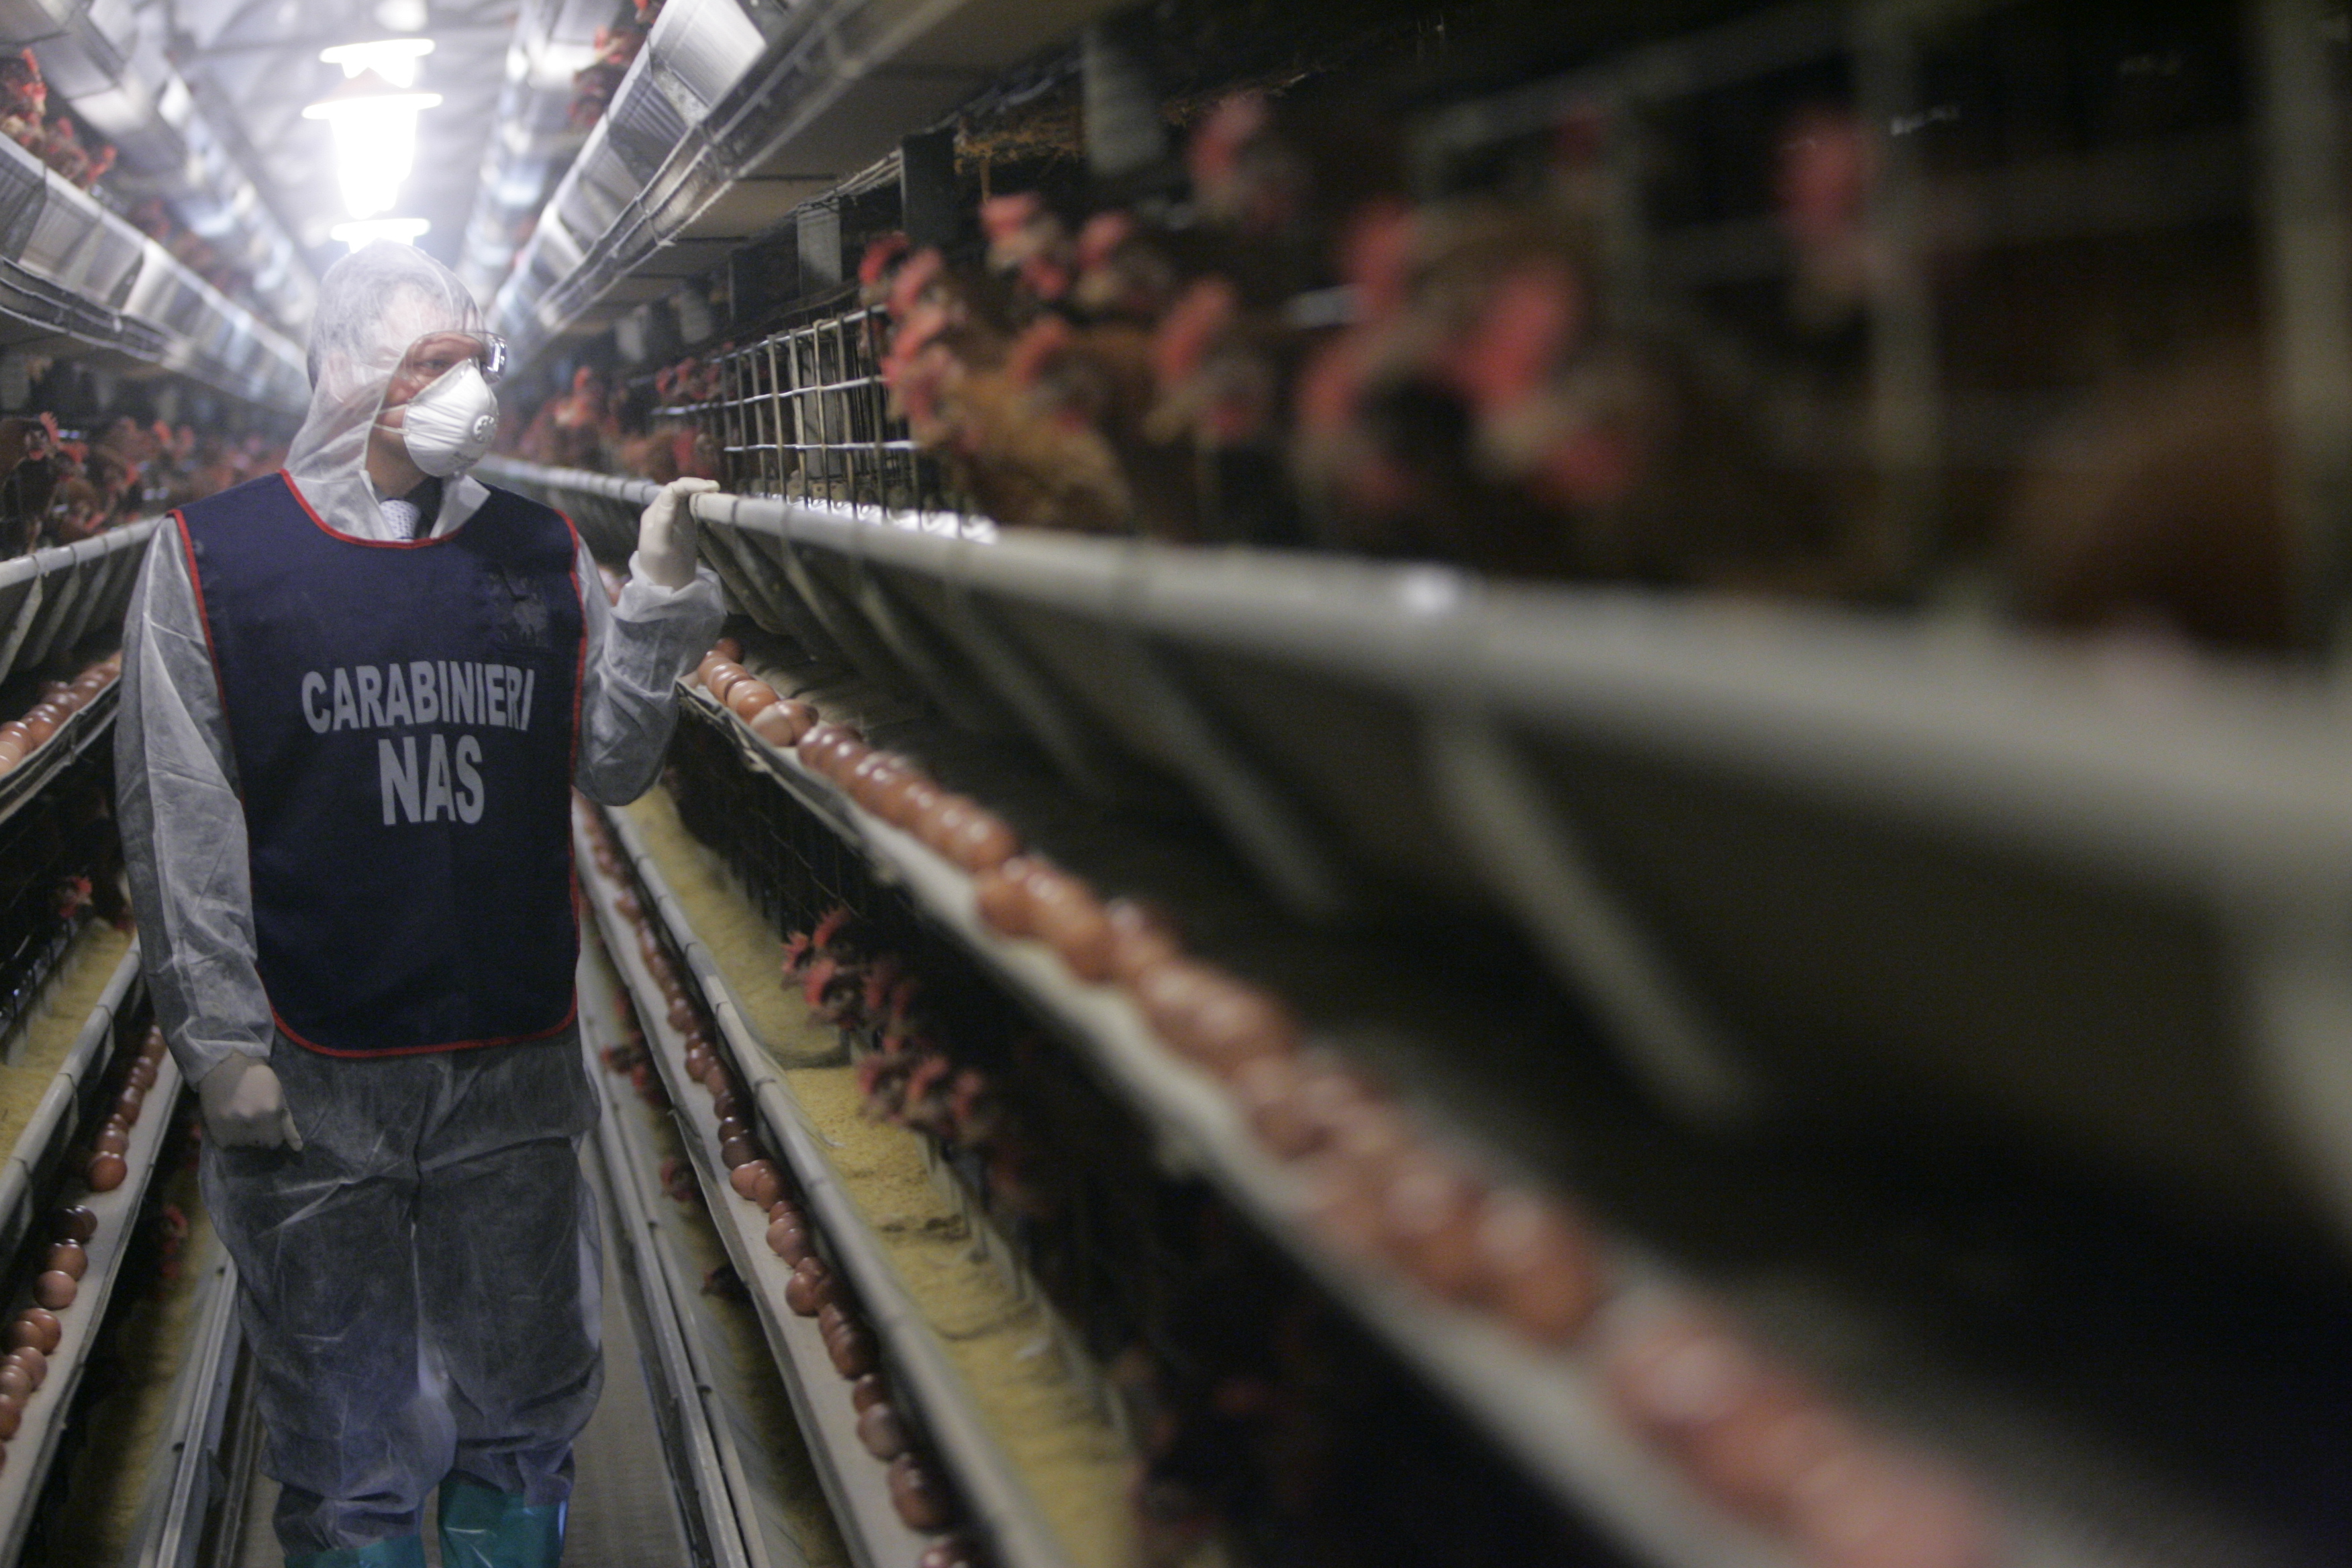 Carabiniere Nas nel corso di un controllo in un allevamento di galline 